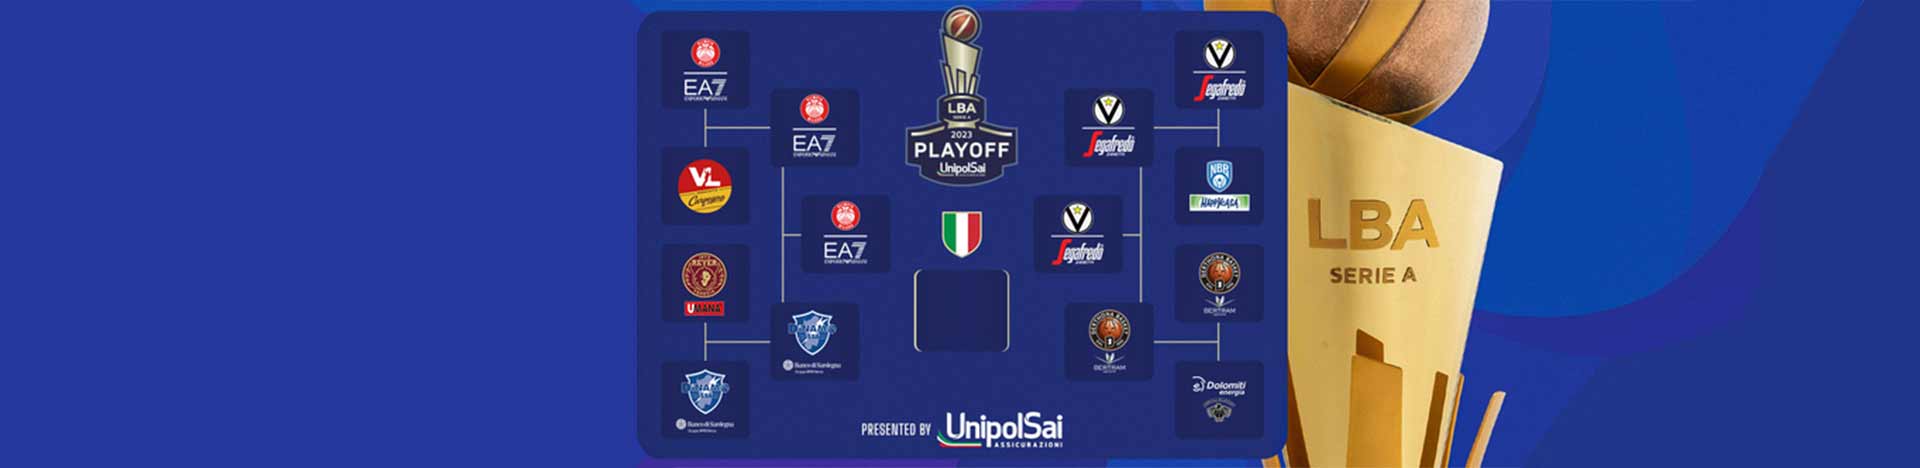 Serie A UnipolSai 2022/23 Finale playoff Gara6: <br>tabellone, risultati e programma prossime gare